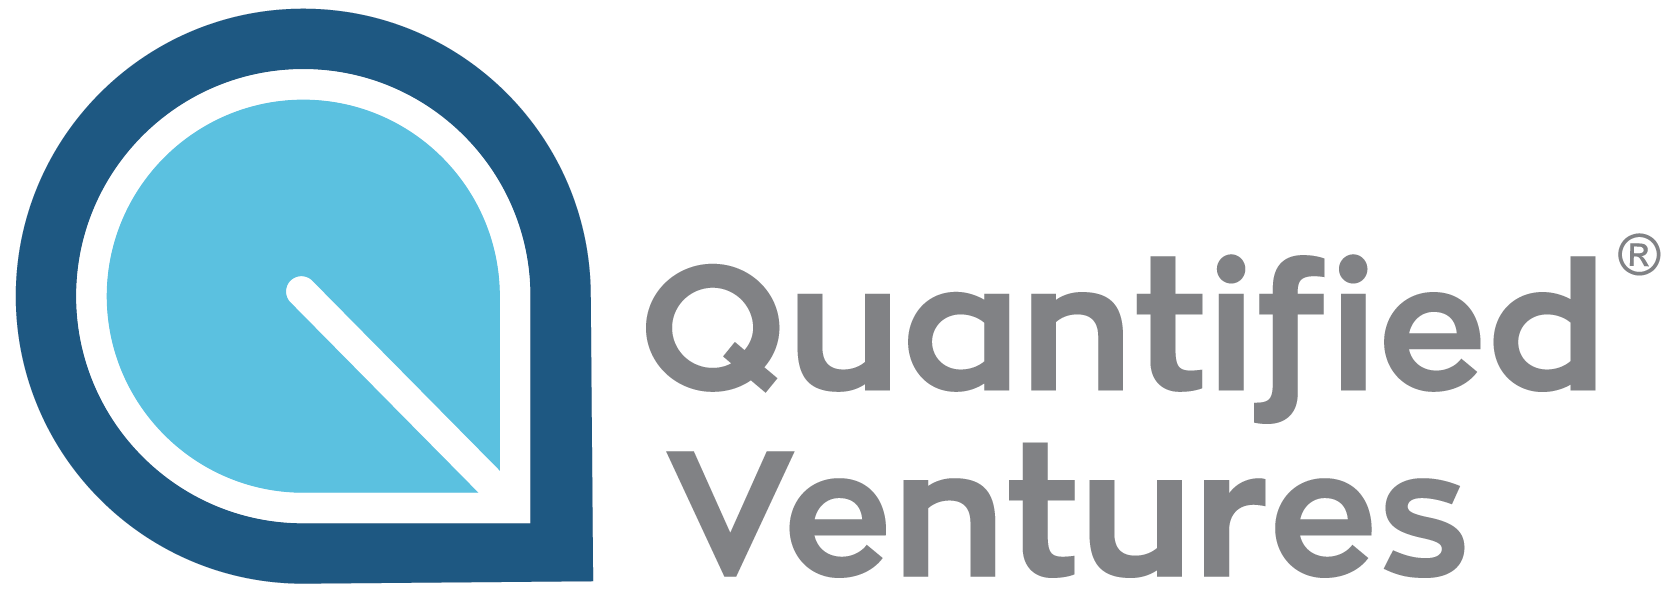 Quantified Ventures jobs